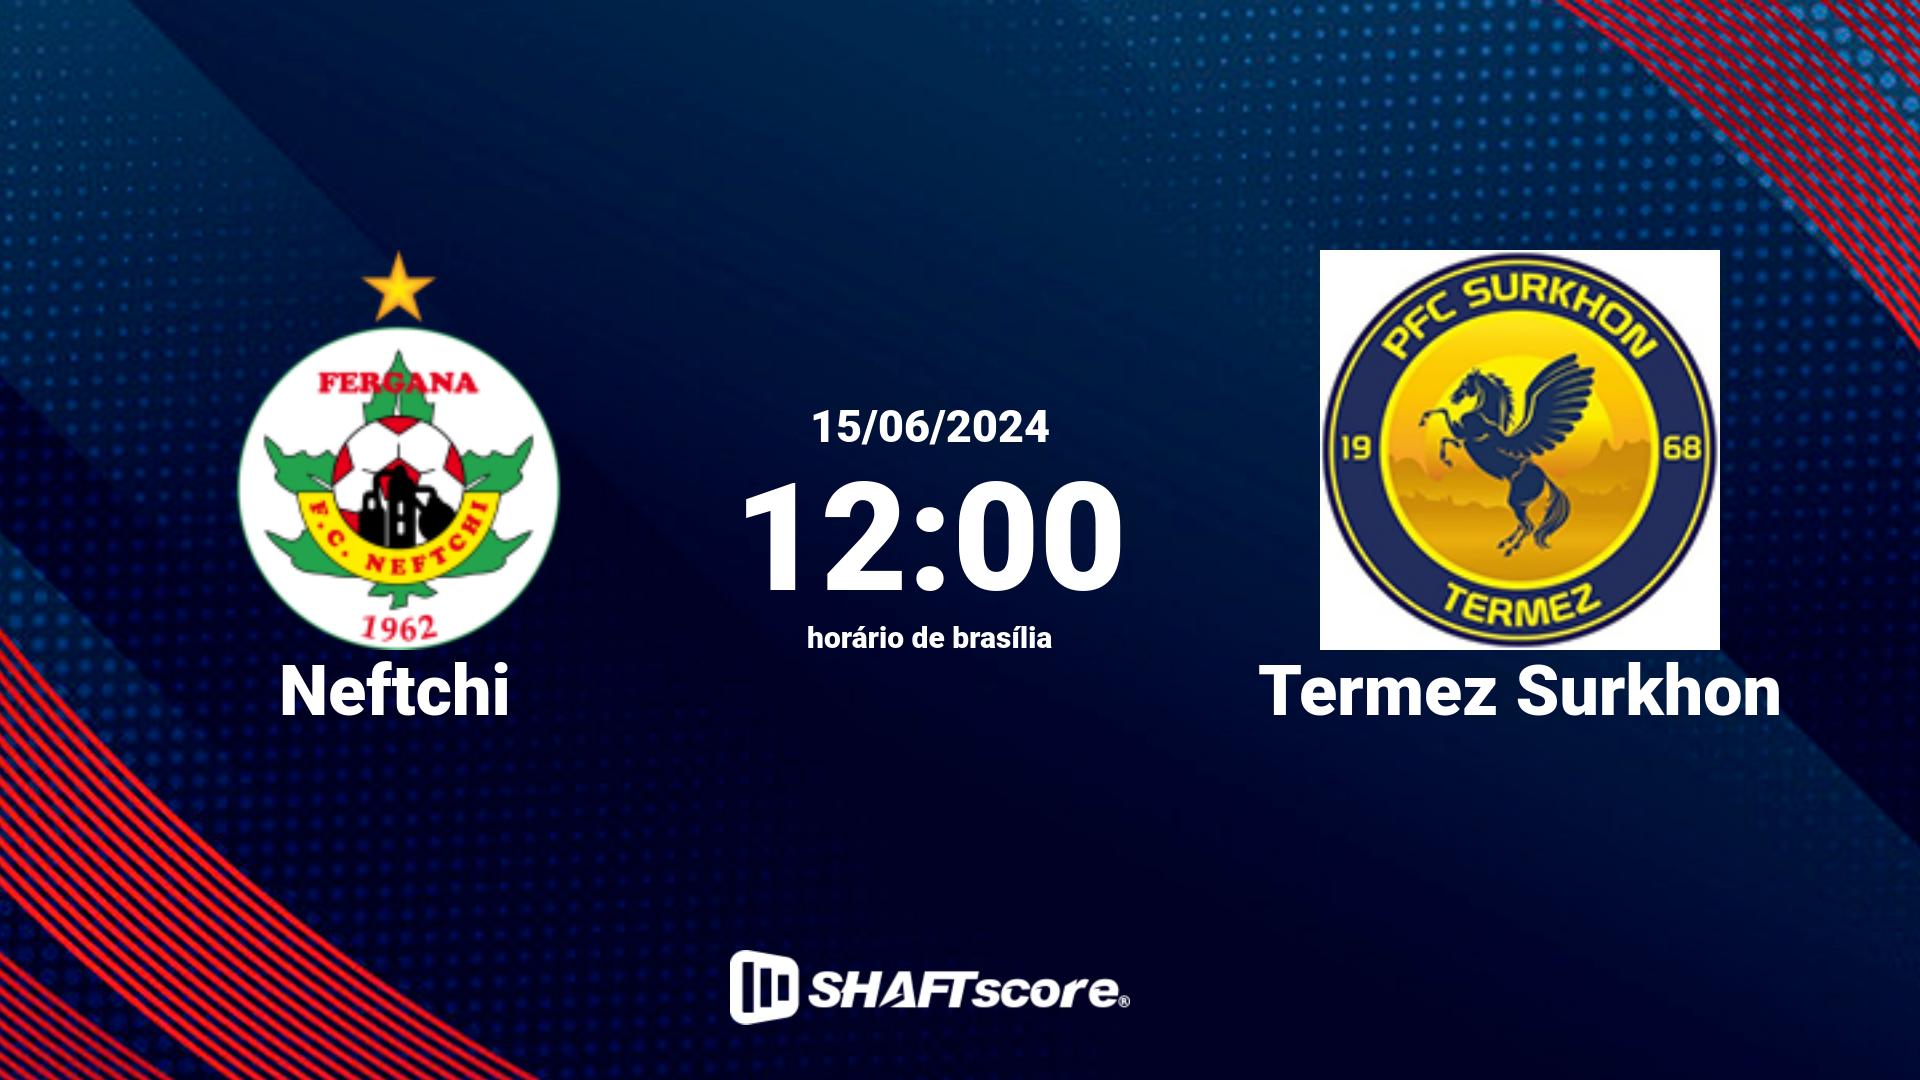 Estatísticas do jogo Neftchi vs Termez Surkhon 15.06 12:00